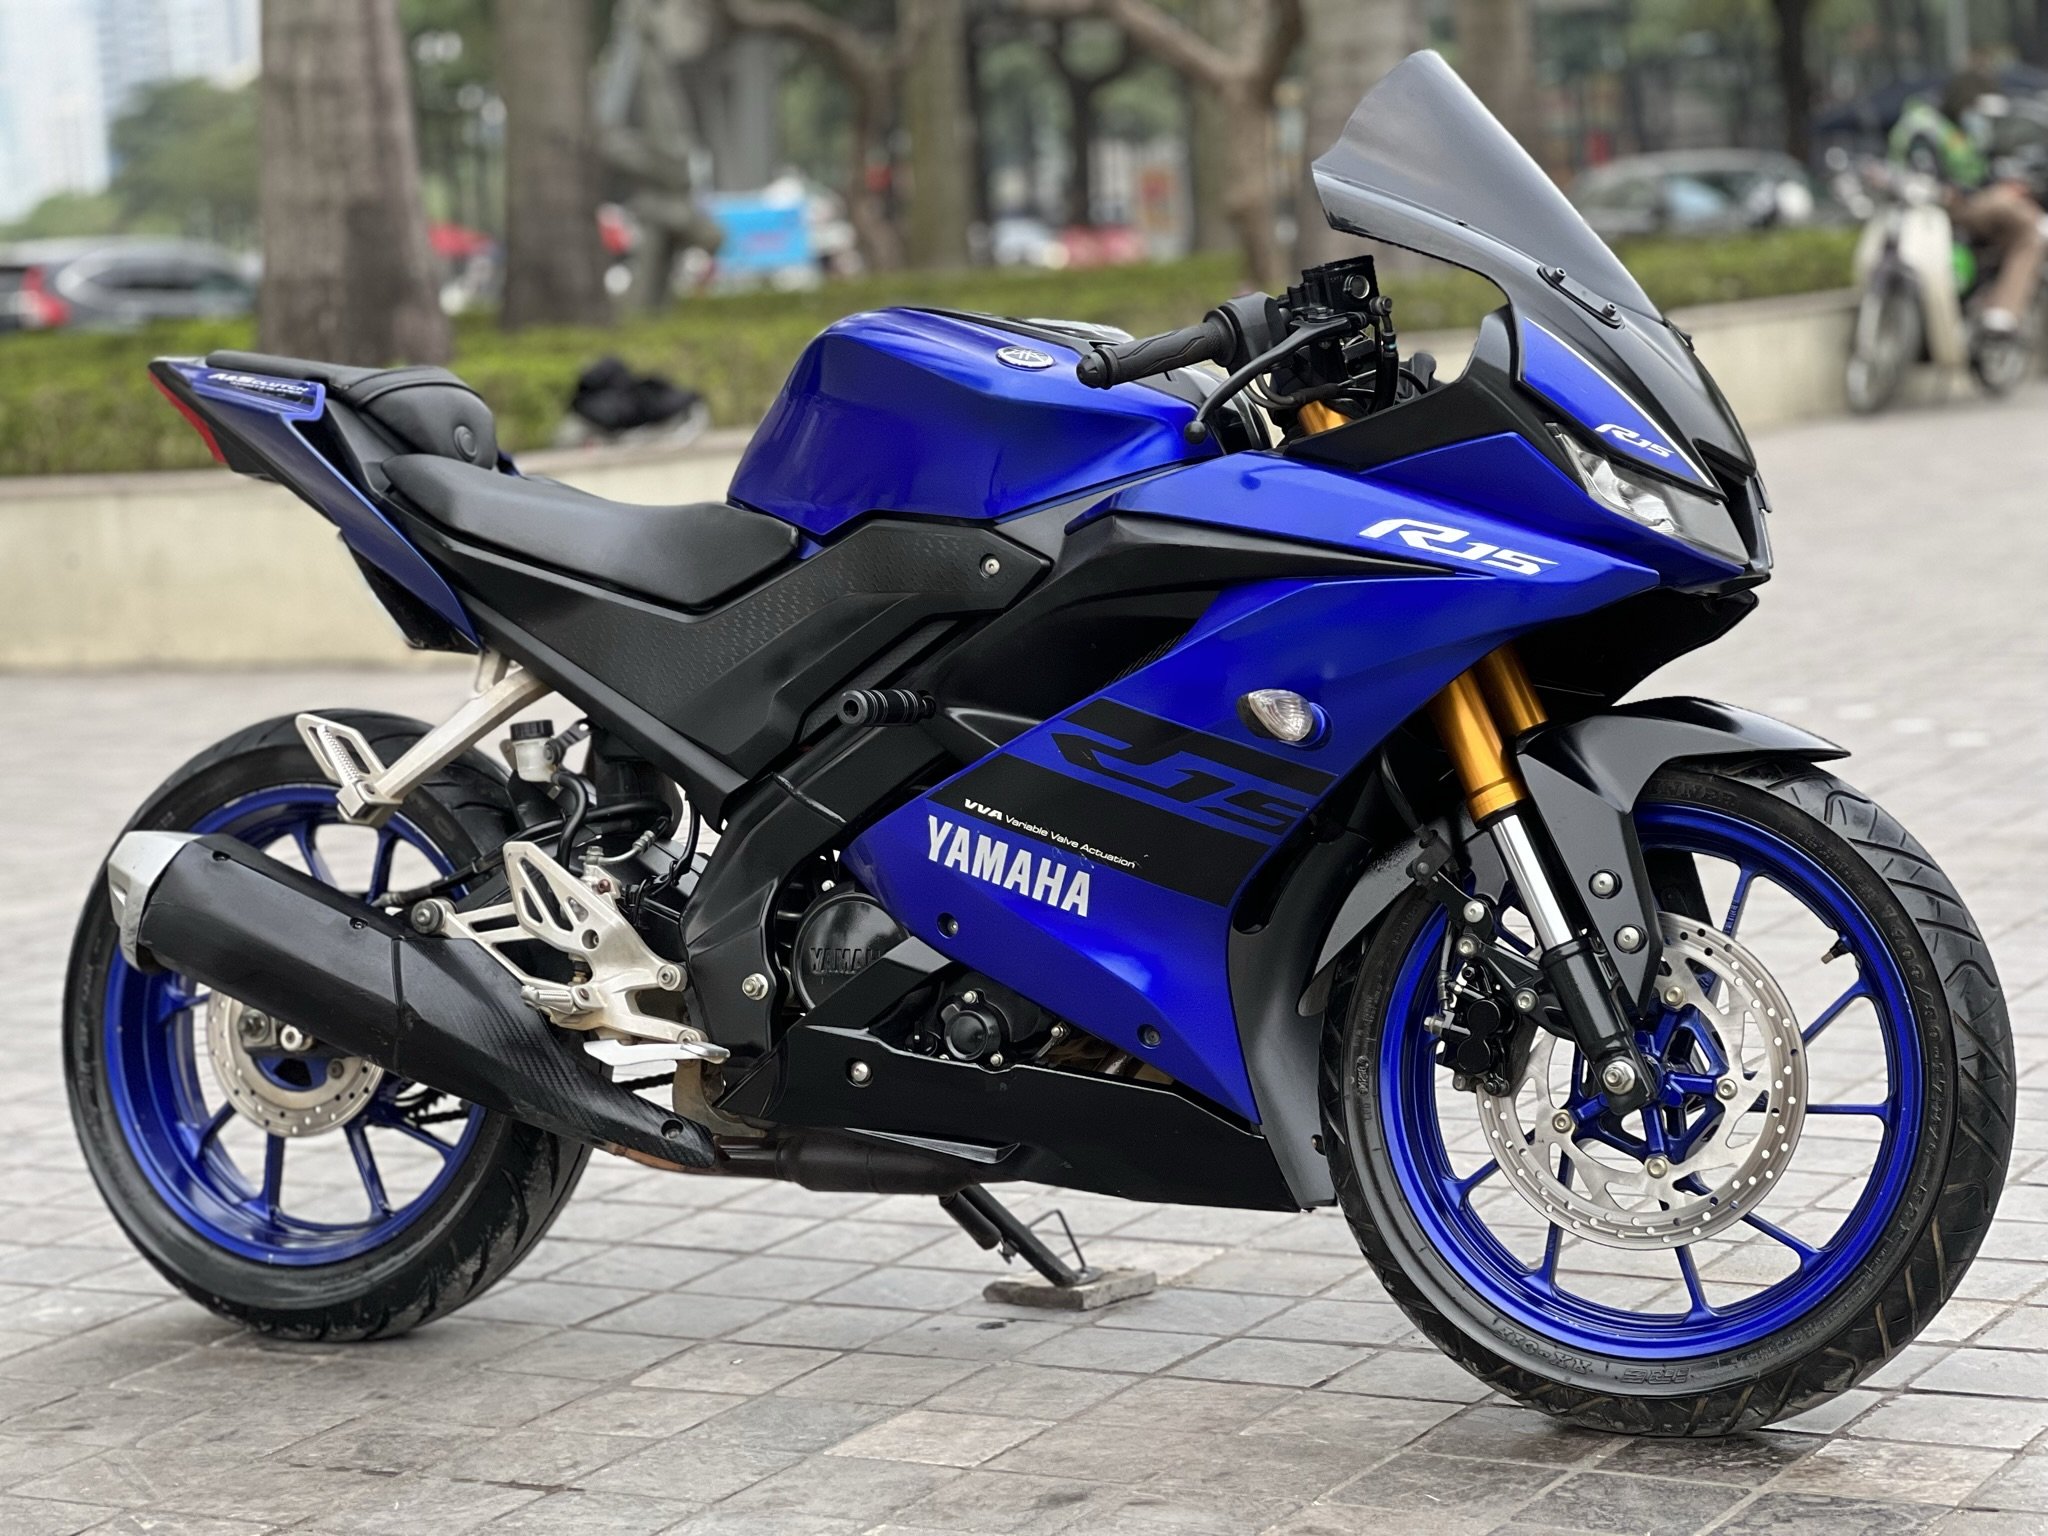 Mua Bán Xe Yamaha R15 Cũ Mới Giá Rẻ 052023 Tại Hà Nội